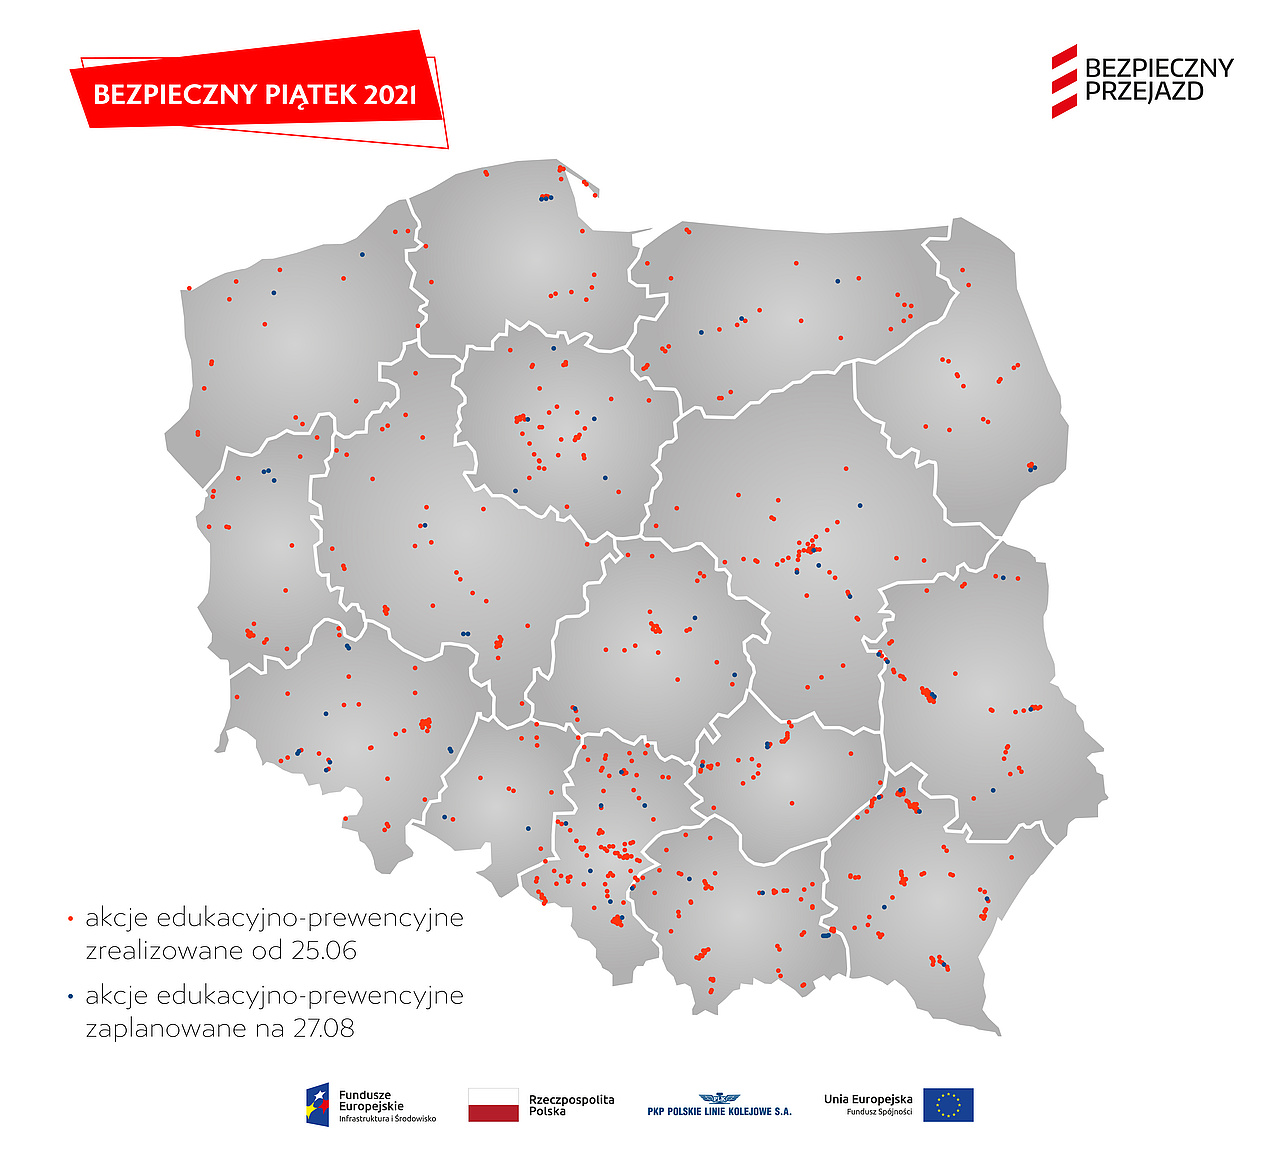 Mapa Polski z naniesionymi lokalizacjami akcji ulotkowych.